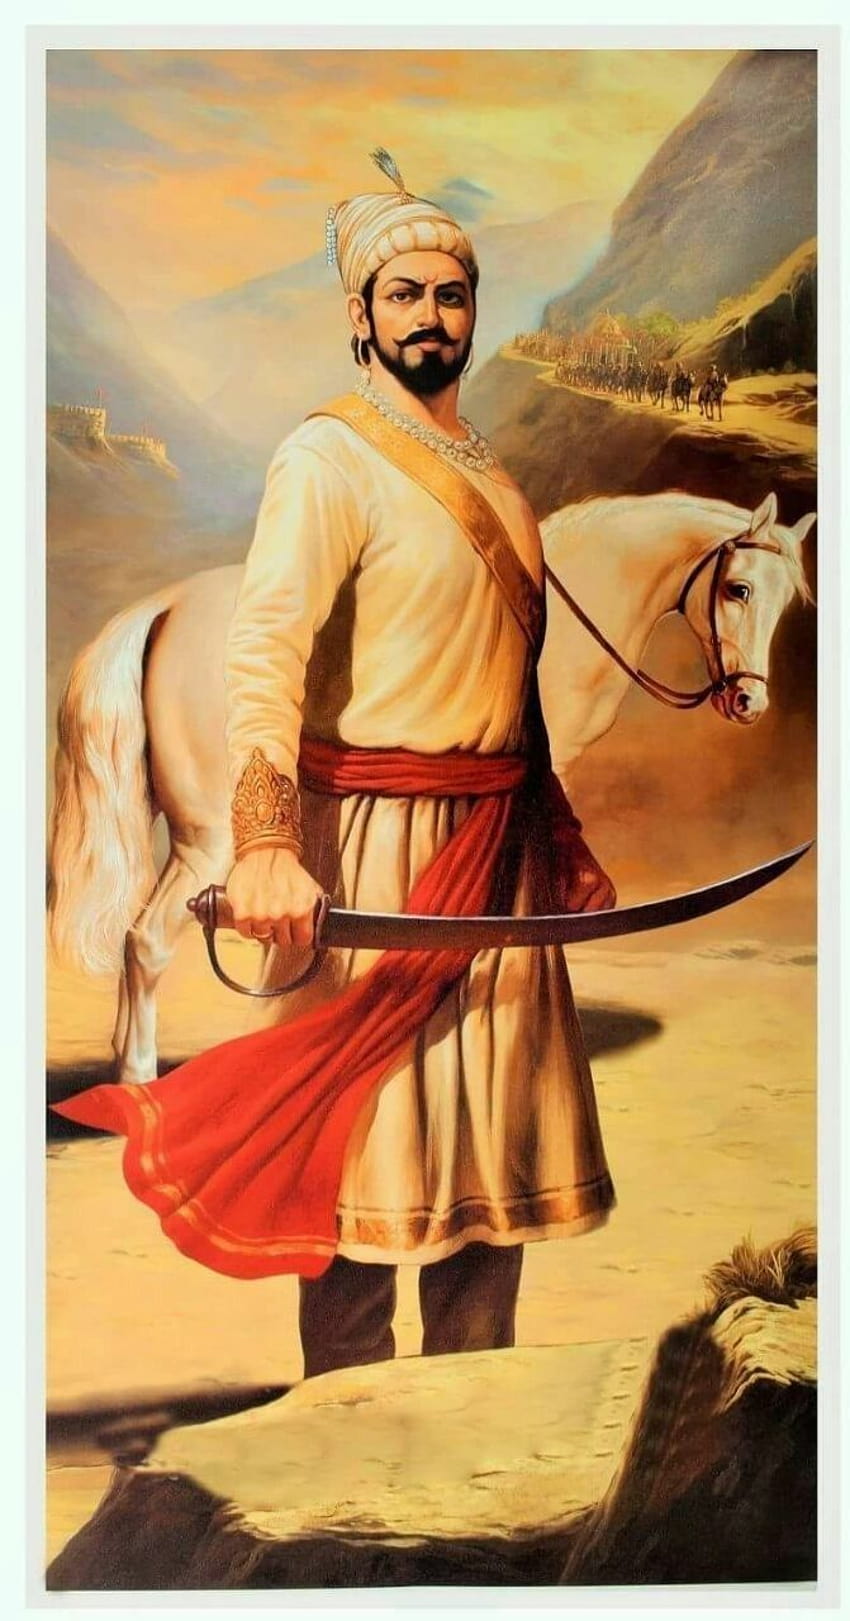 チャトラパティ シヴァジー マハラジ、ヒンズー教の戦士 HD電話の壁紙